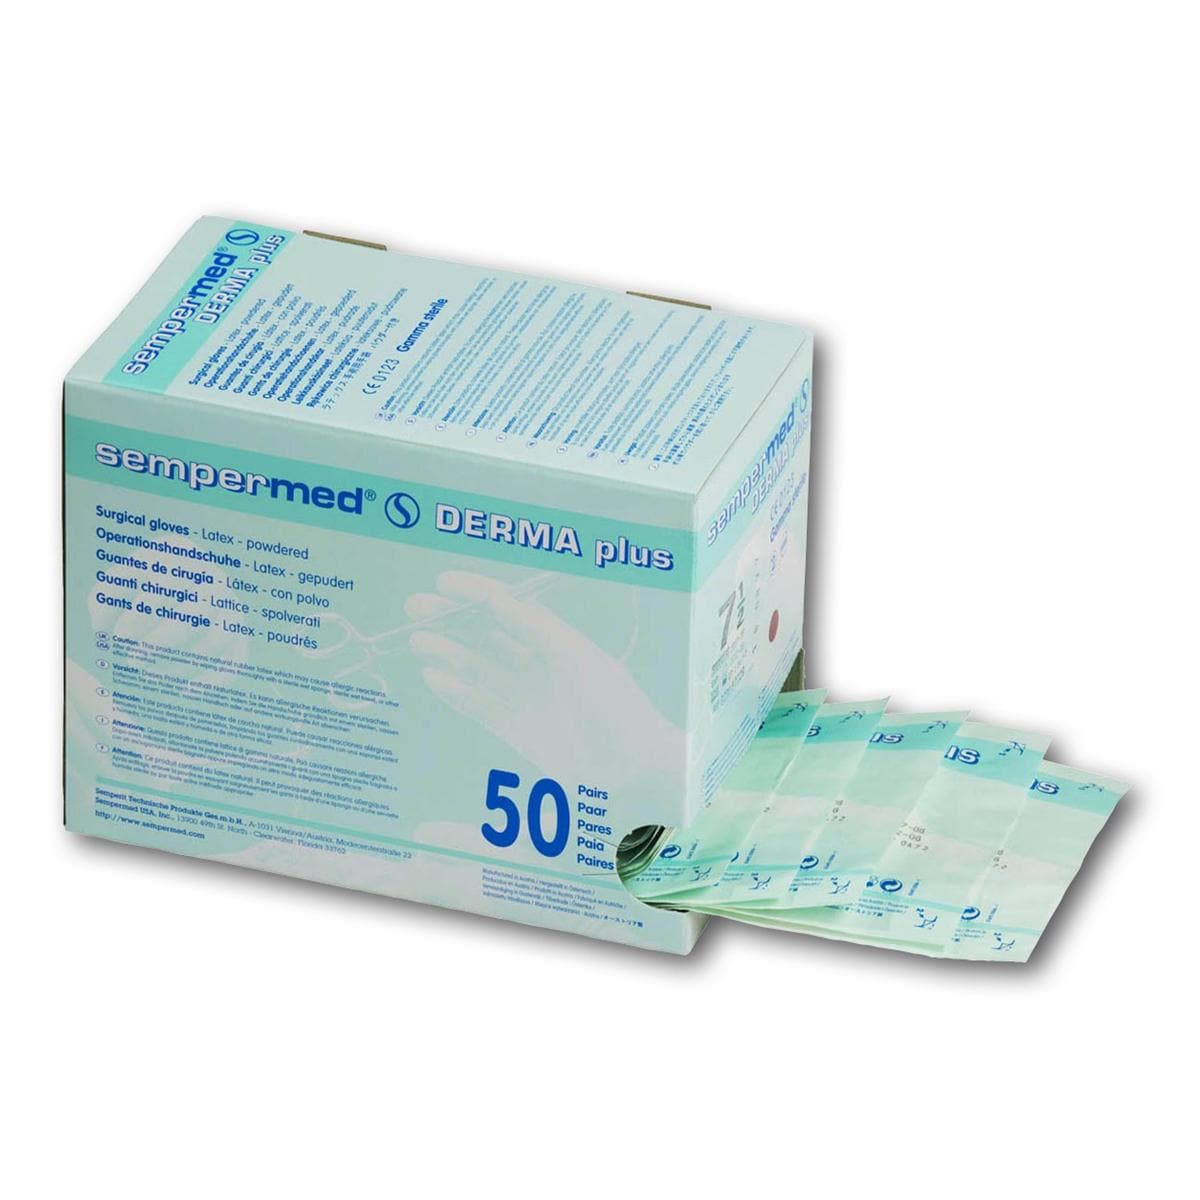 Sempermed® Derma Plus gepudert - Größe 7 1/2, Packung 50 Paar